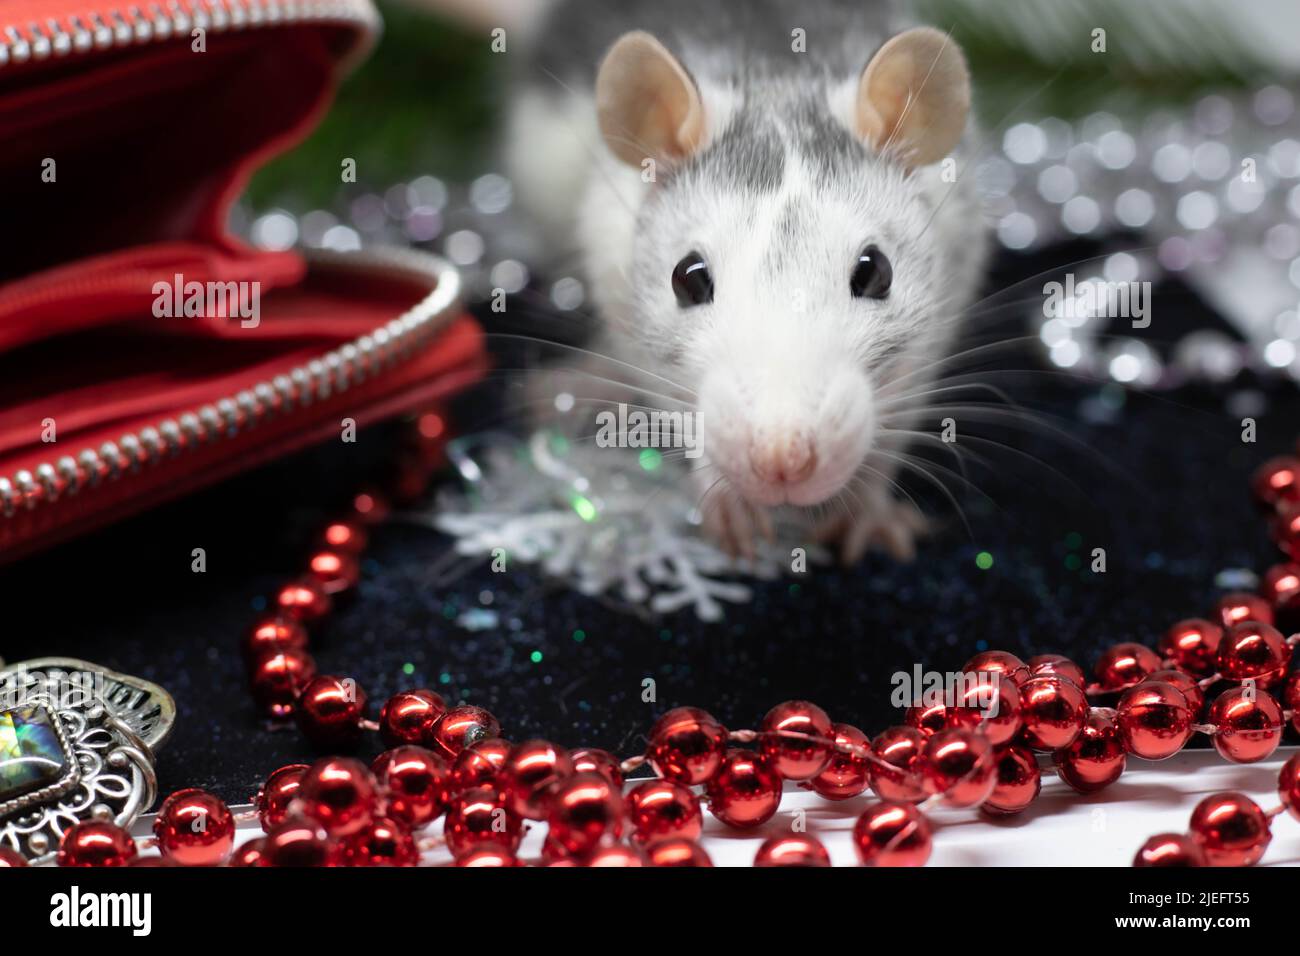 Gros plan d'un rat regarde hors de son refuge, symbole de 2020 argent domestique Banque D'Images